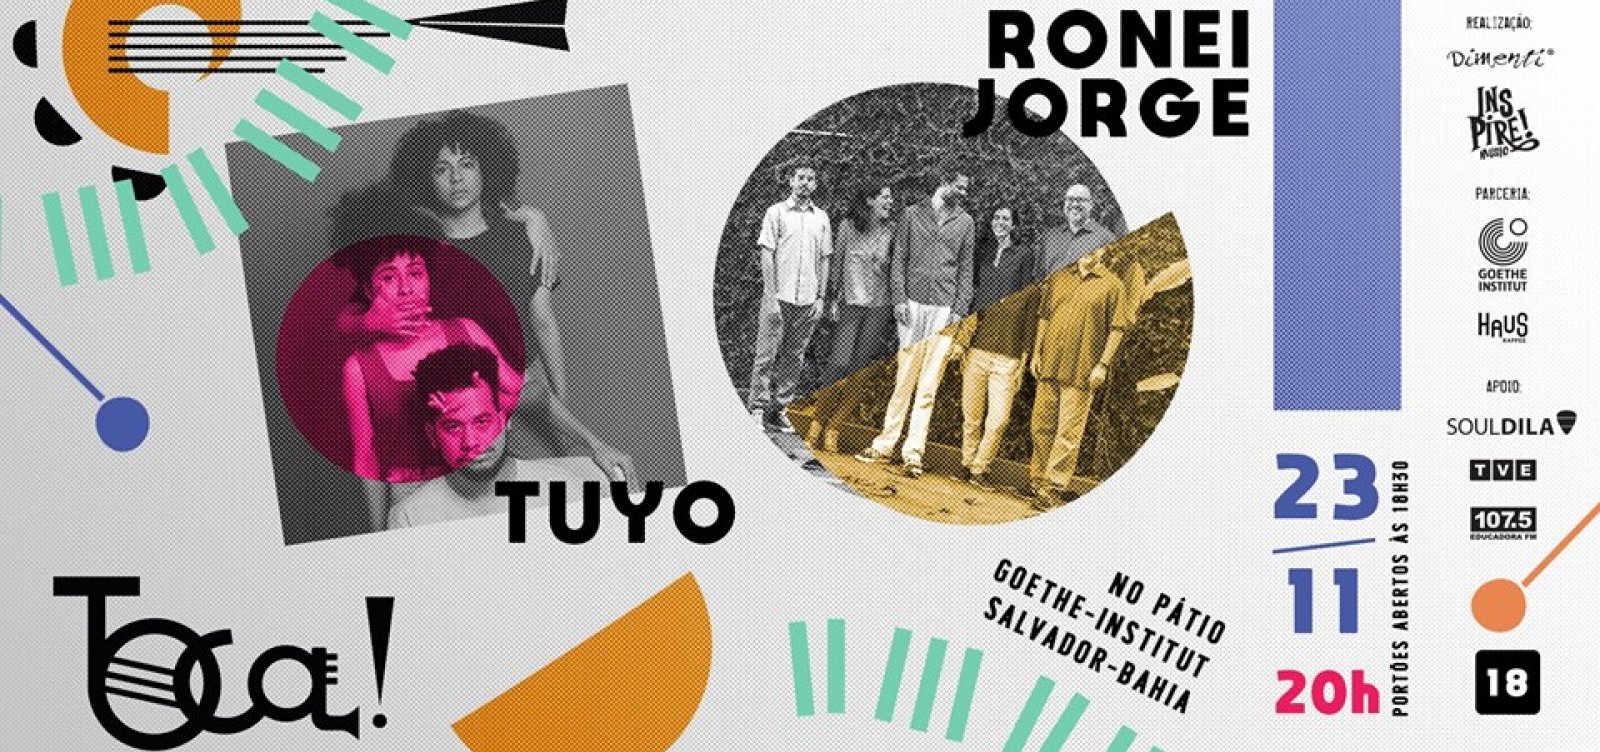 Festa TOCA! reúne shows de Ronei Jorge e Tuyo no Goethe-Institut, em Salvador